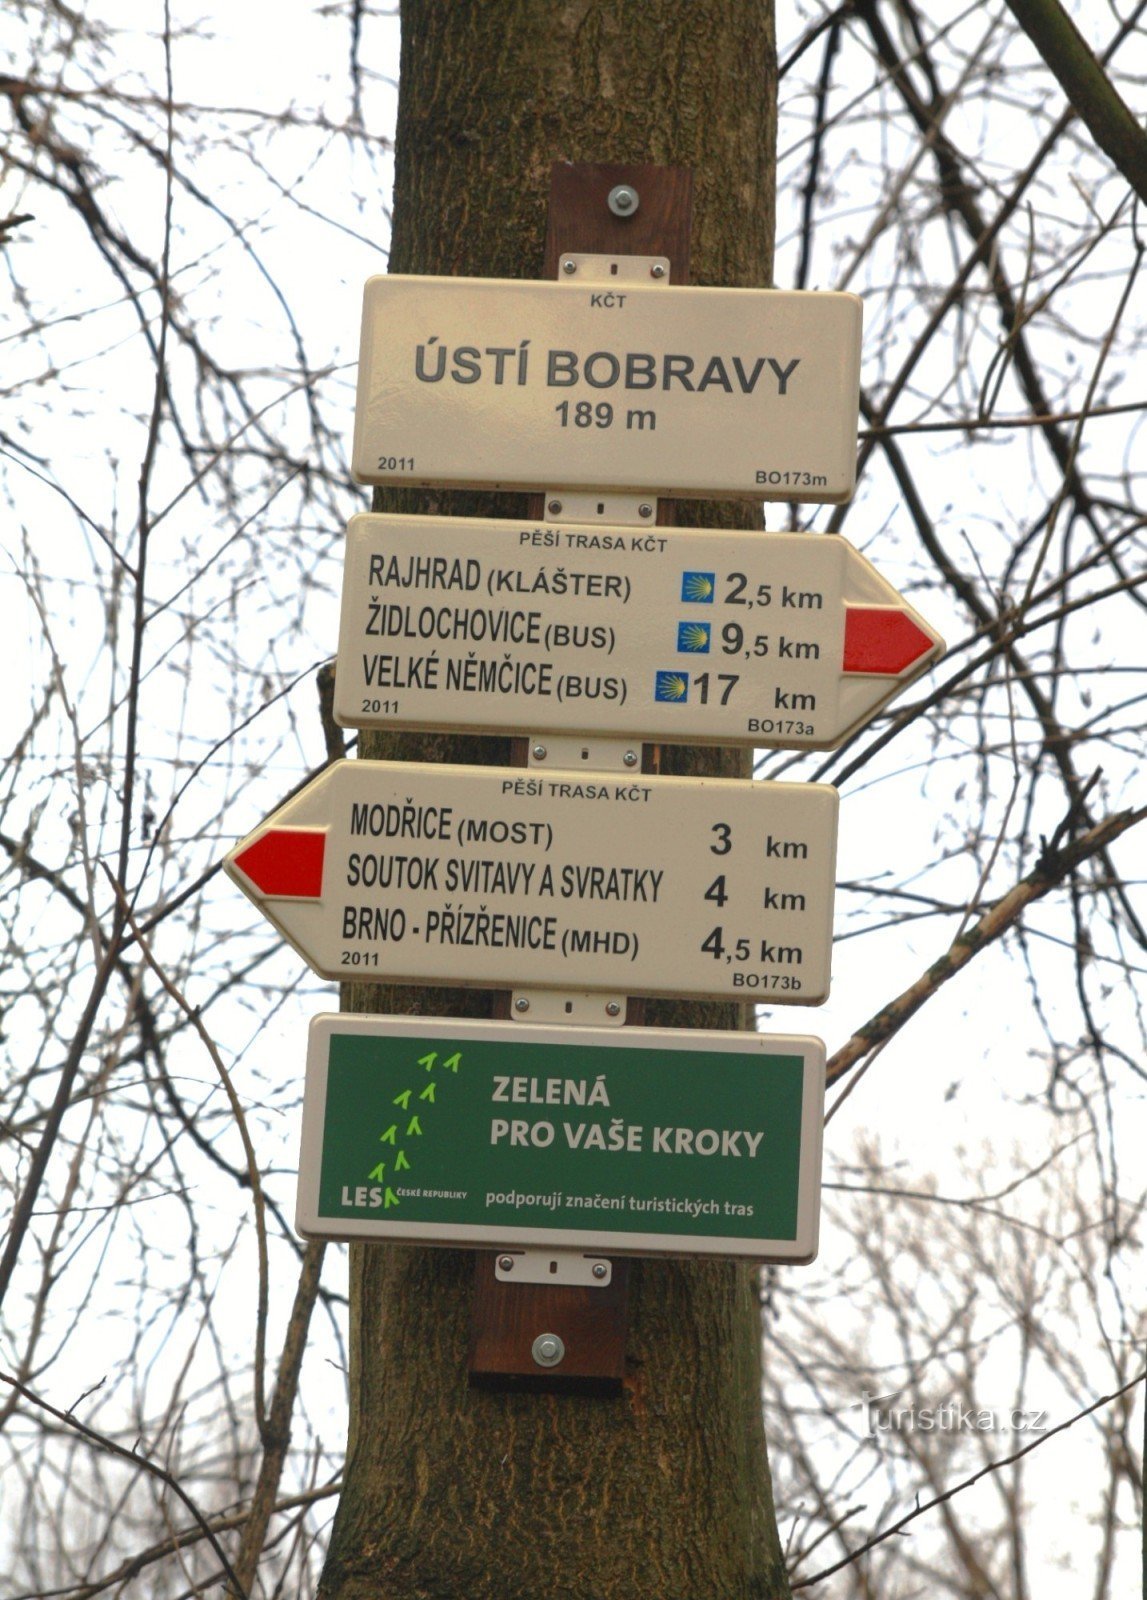 Tourist crossroads of Ústí Bobrava